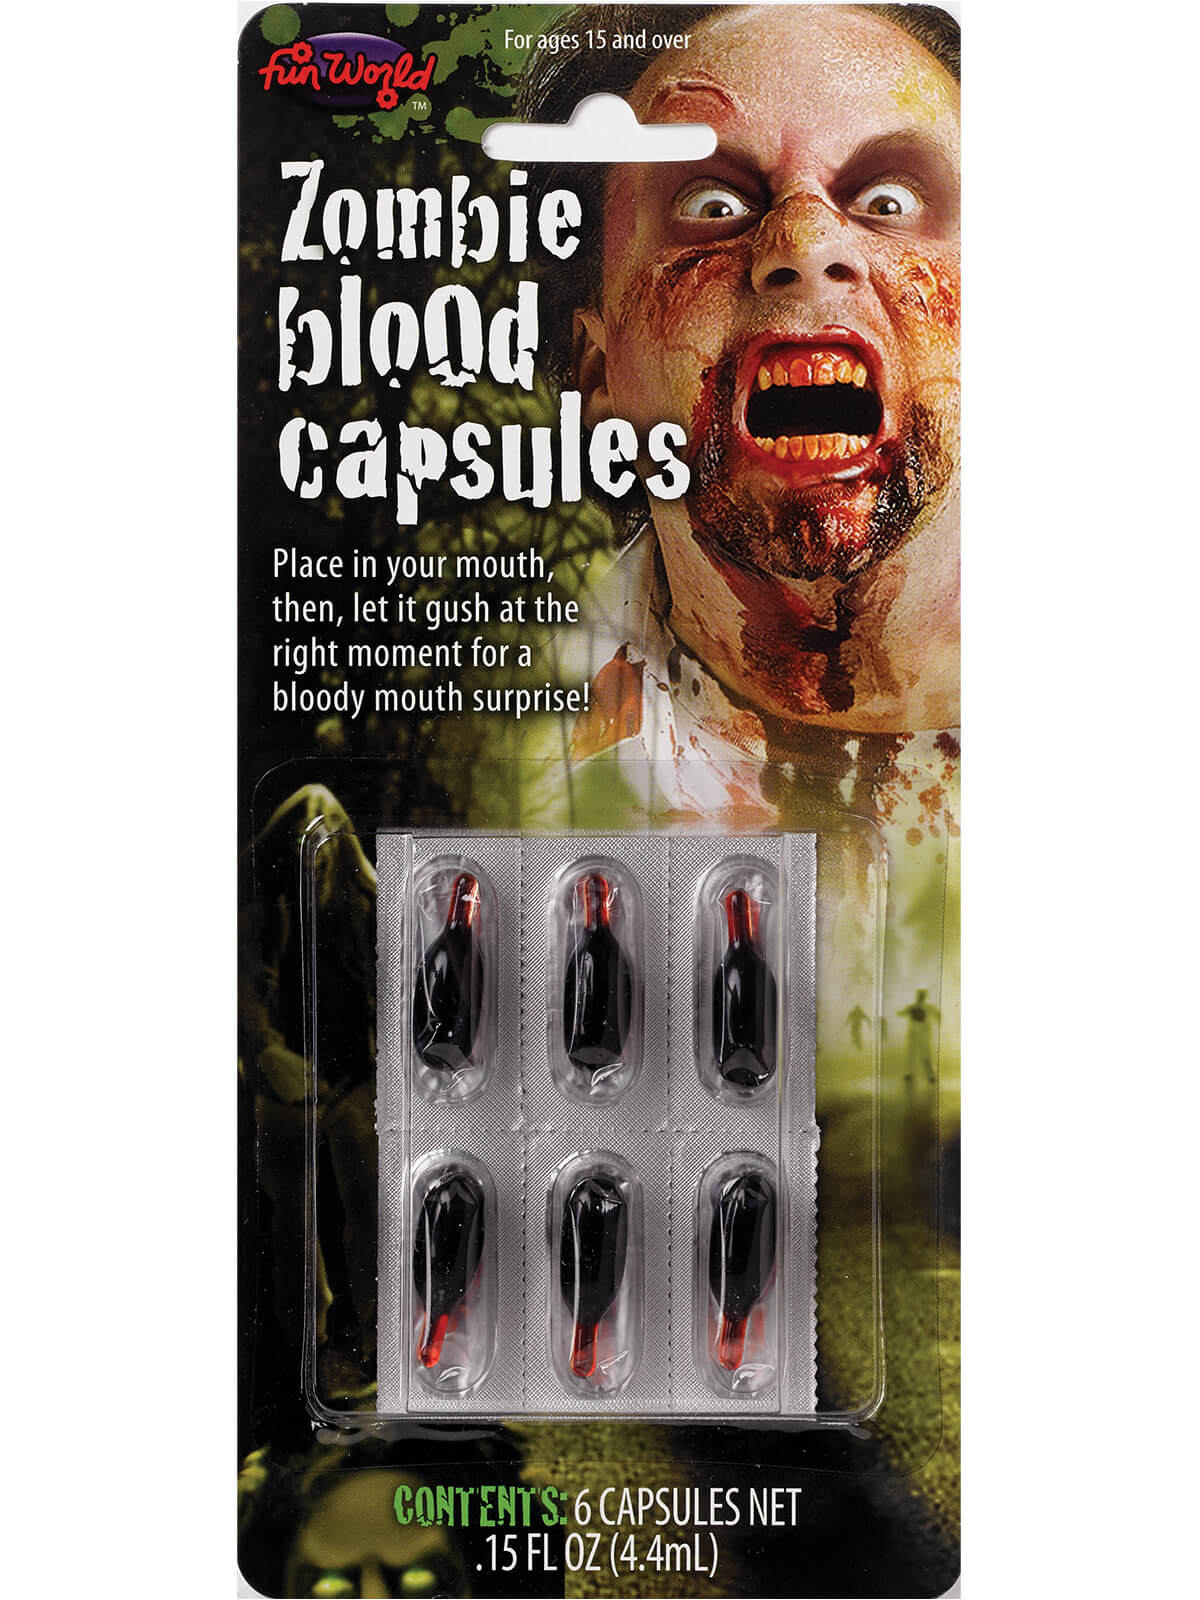 Blood Capsules